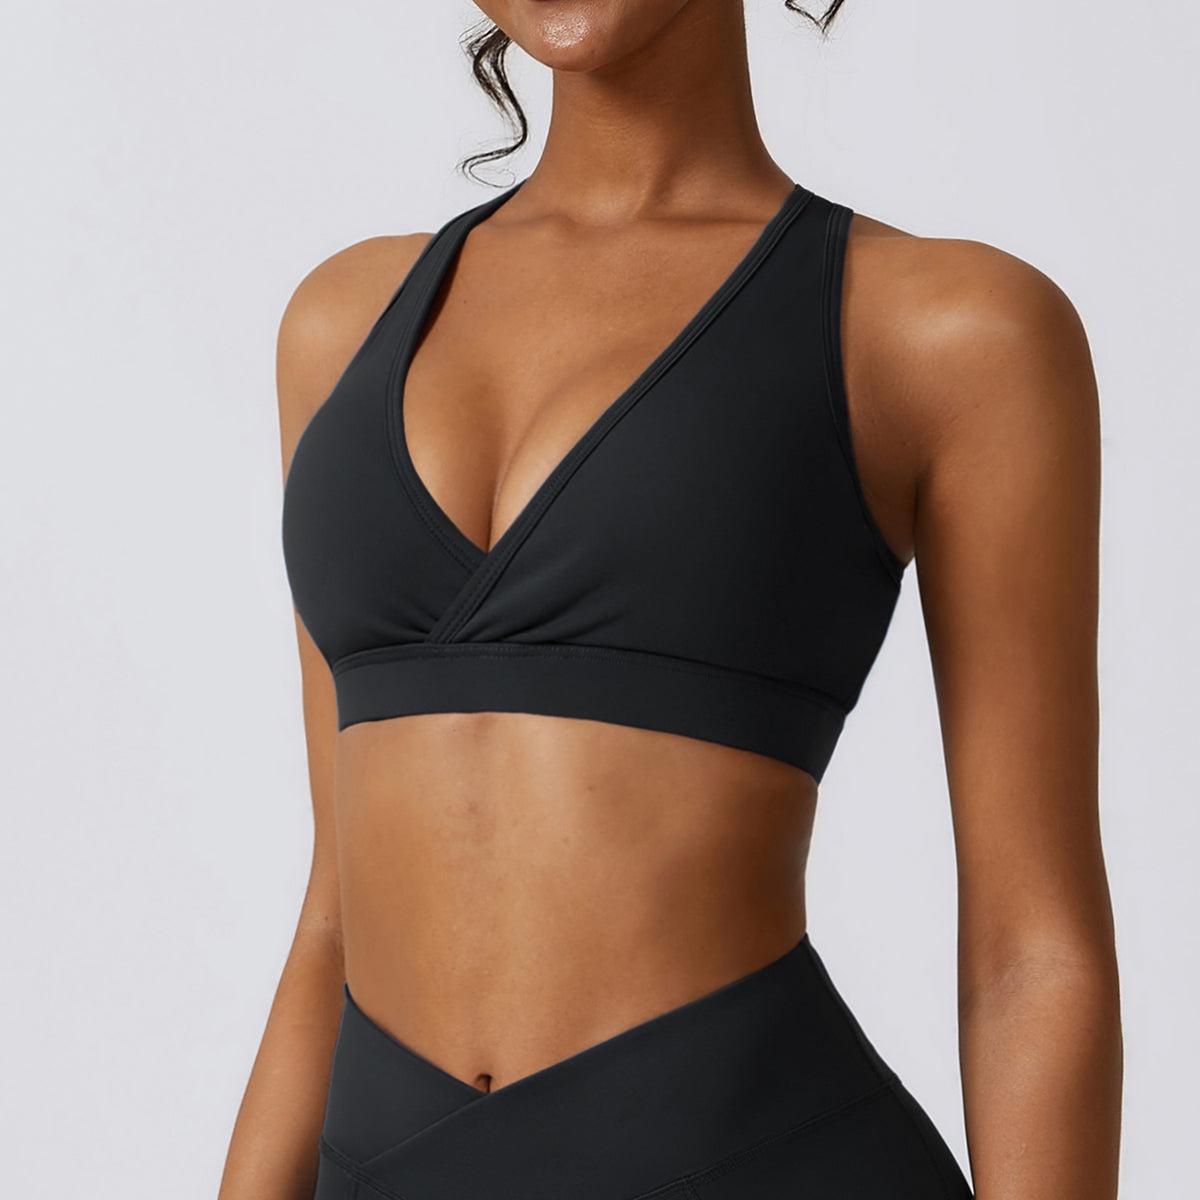 a woman in a black sports bra top